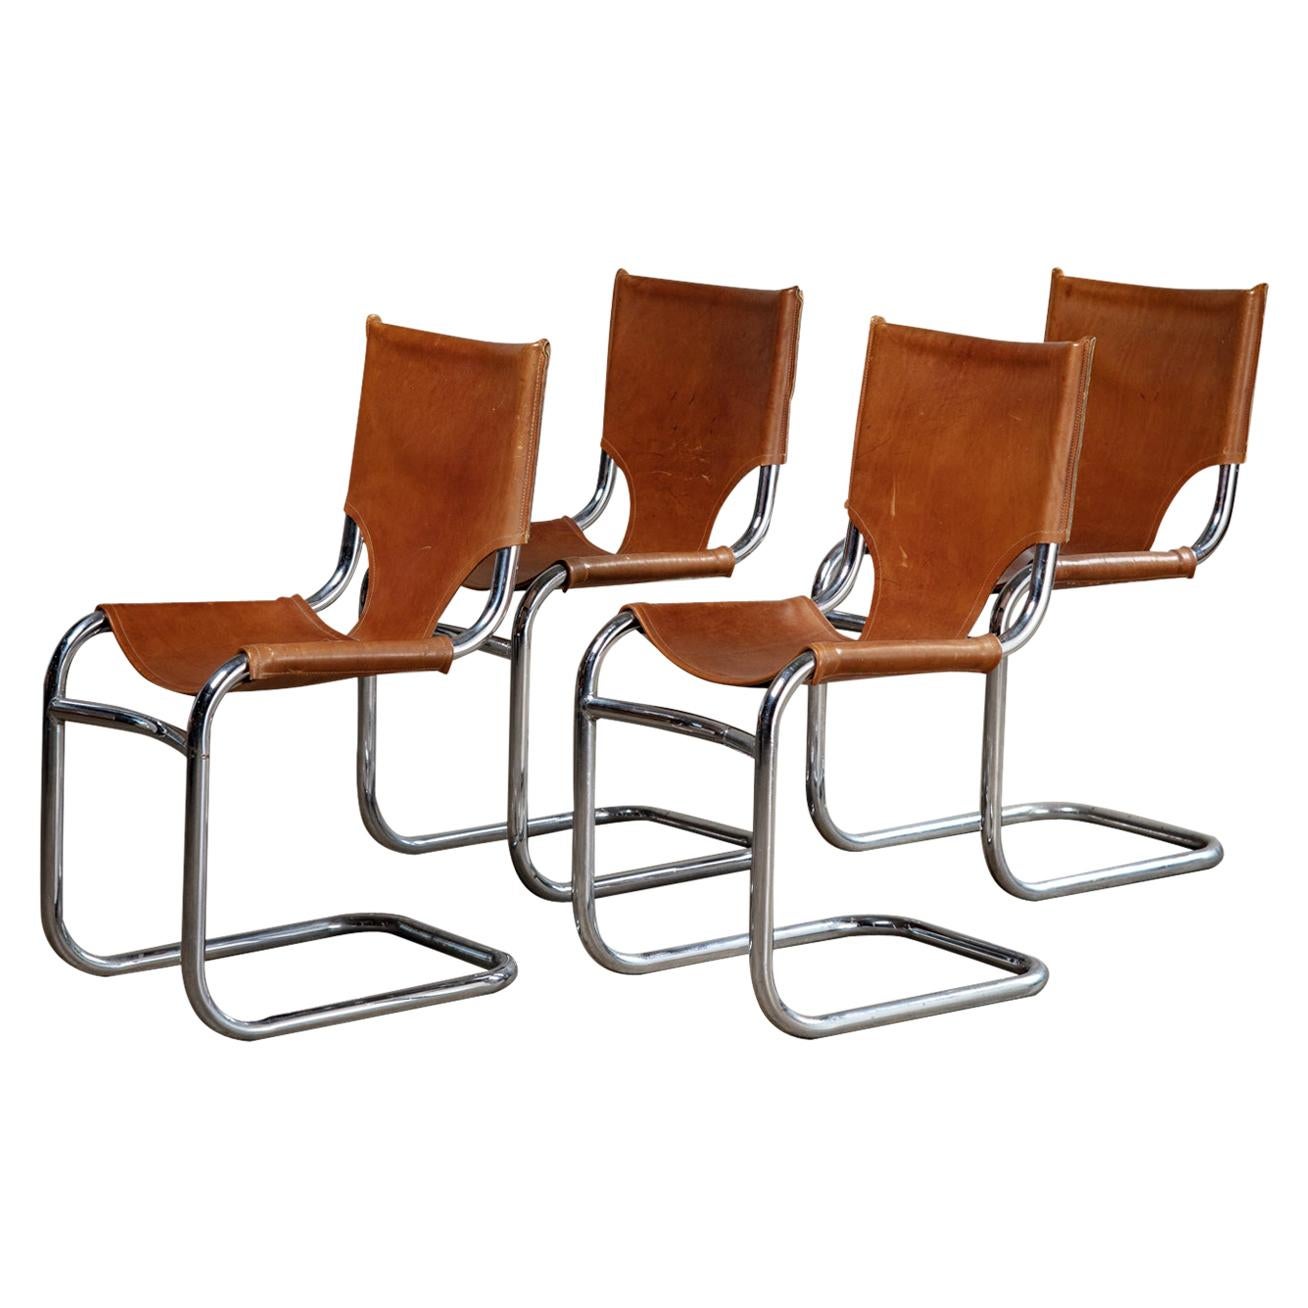 Dan Johnson Metal Chairs